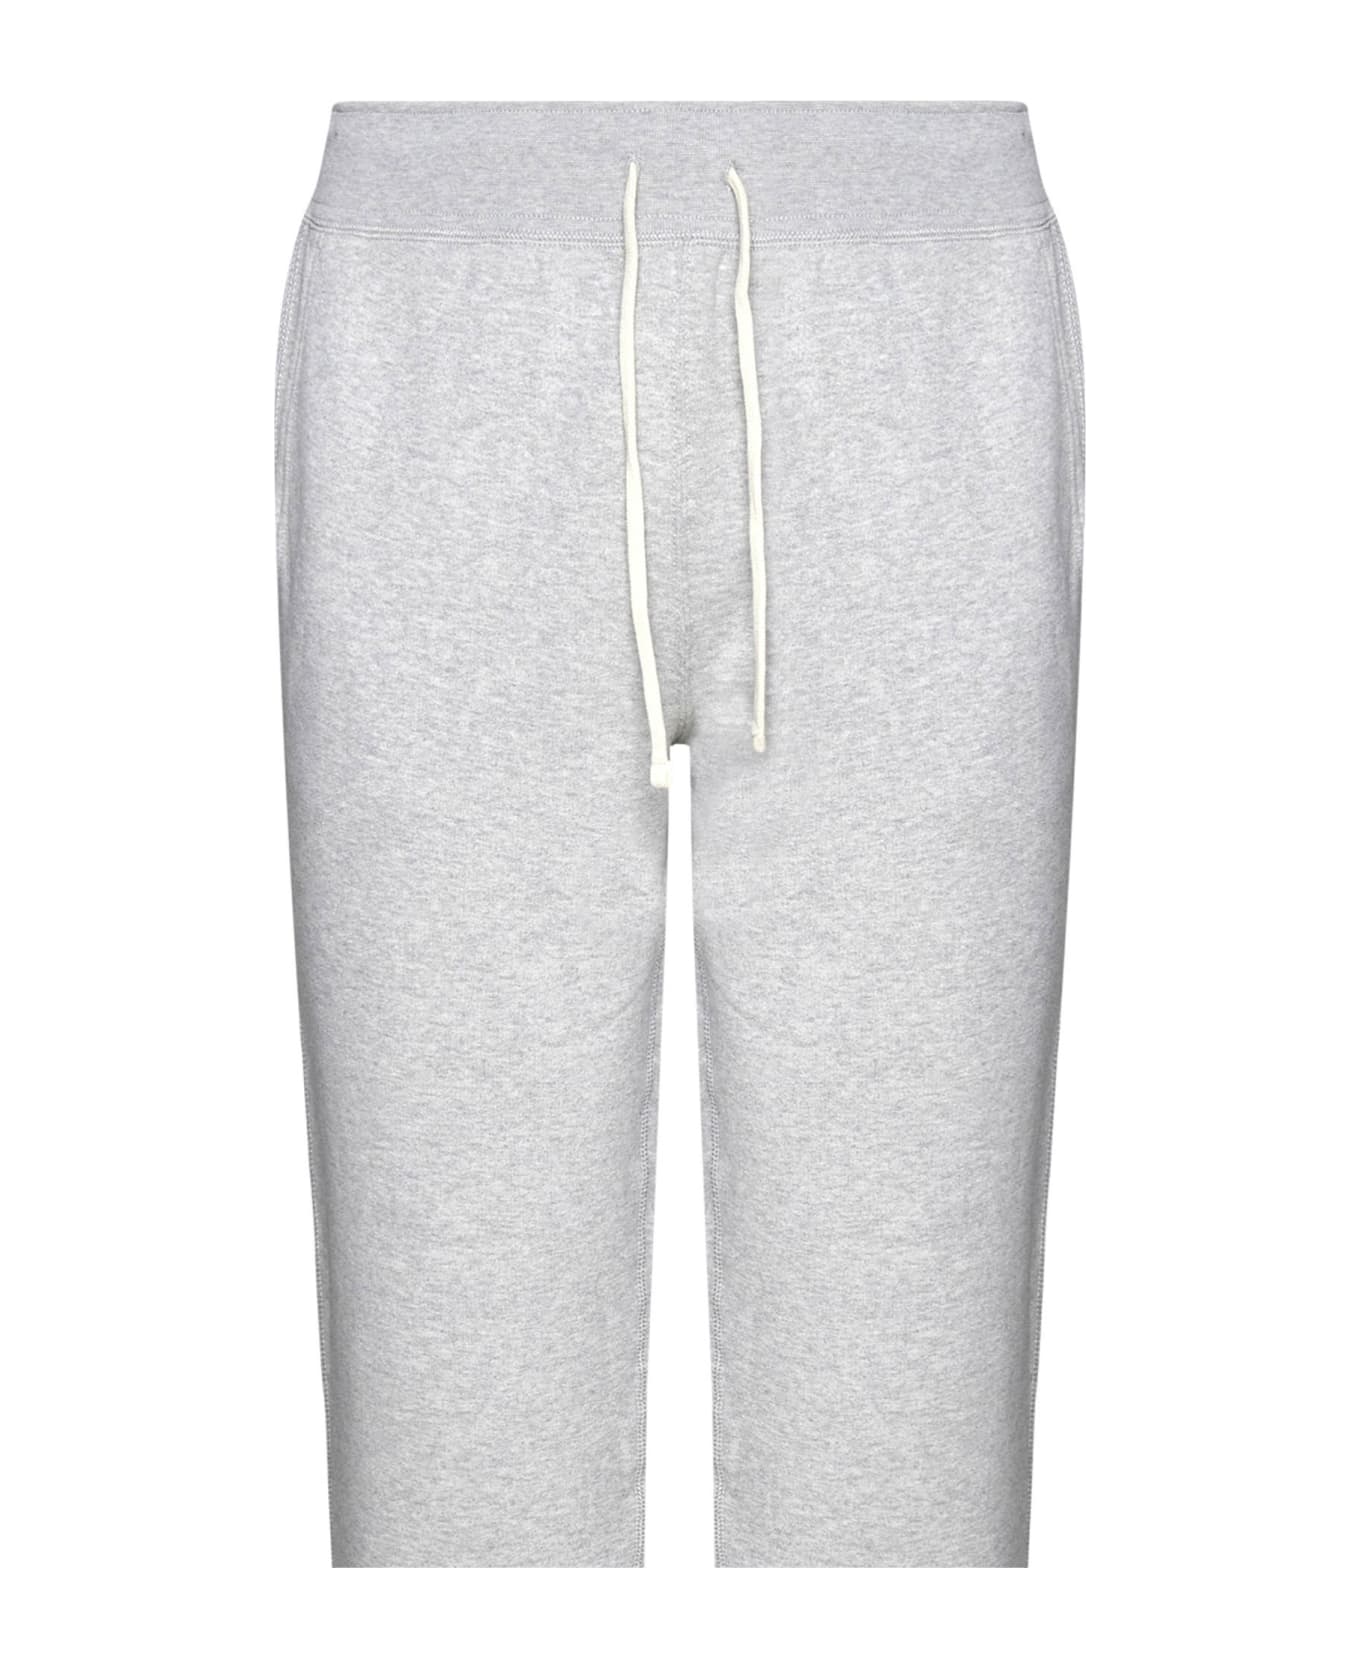 Polo Ralph Lauren Grey Cotton Blend Sporty Pants - Grey